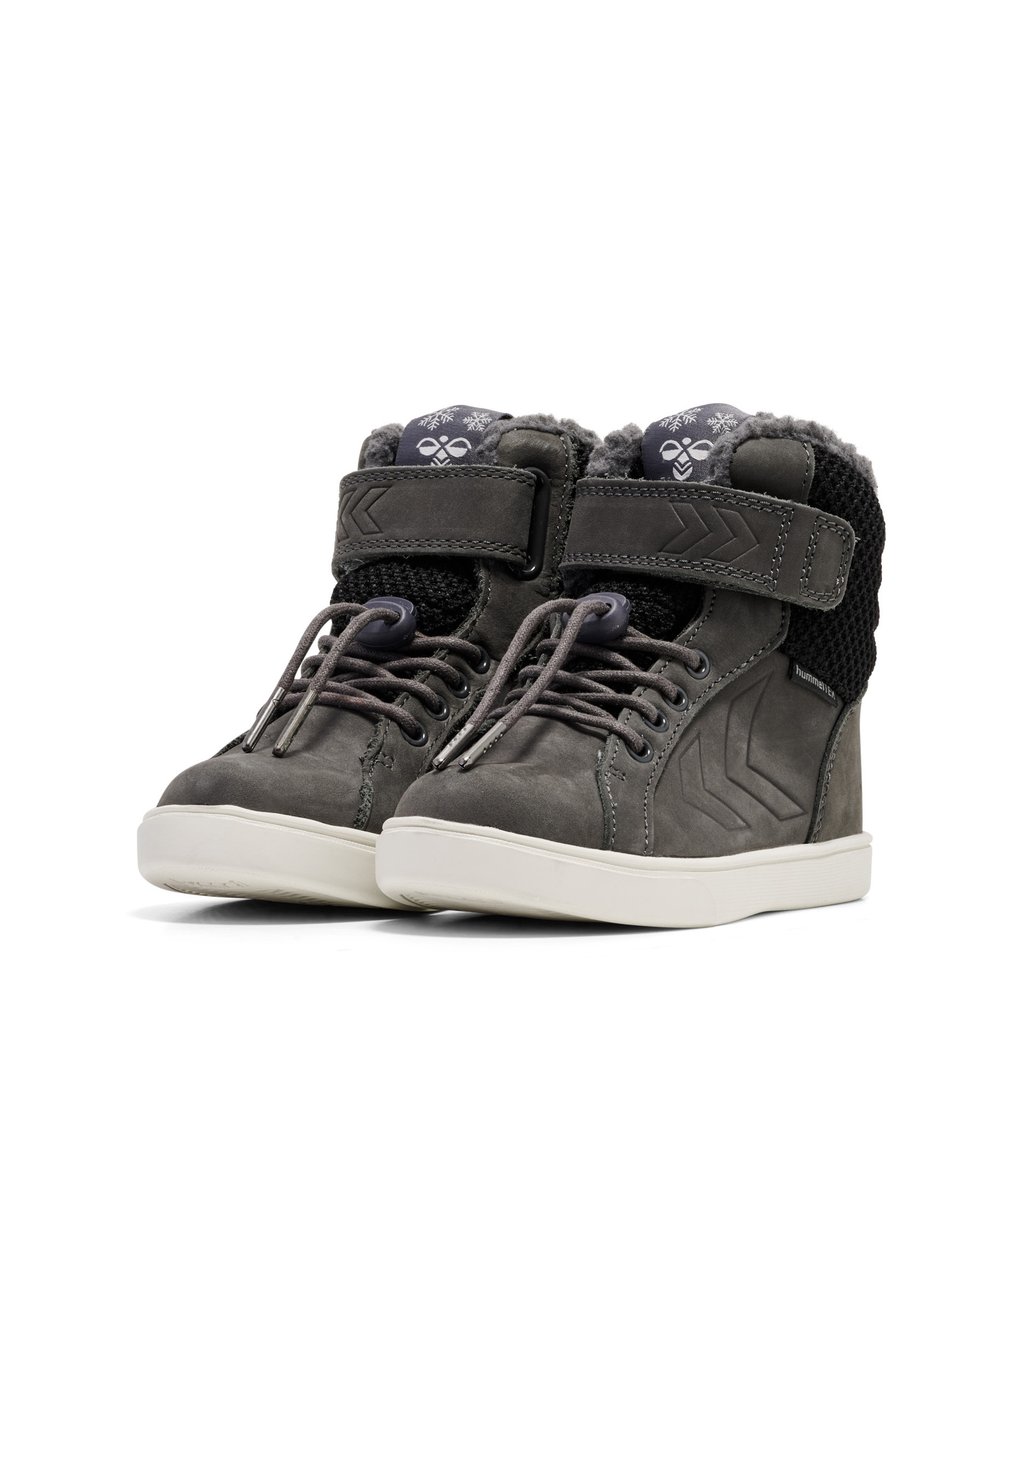 Зимние ботинки/зимние ботинки SPLASH TEX JR Hummel, цвет asphalt